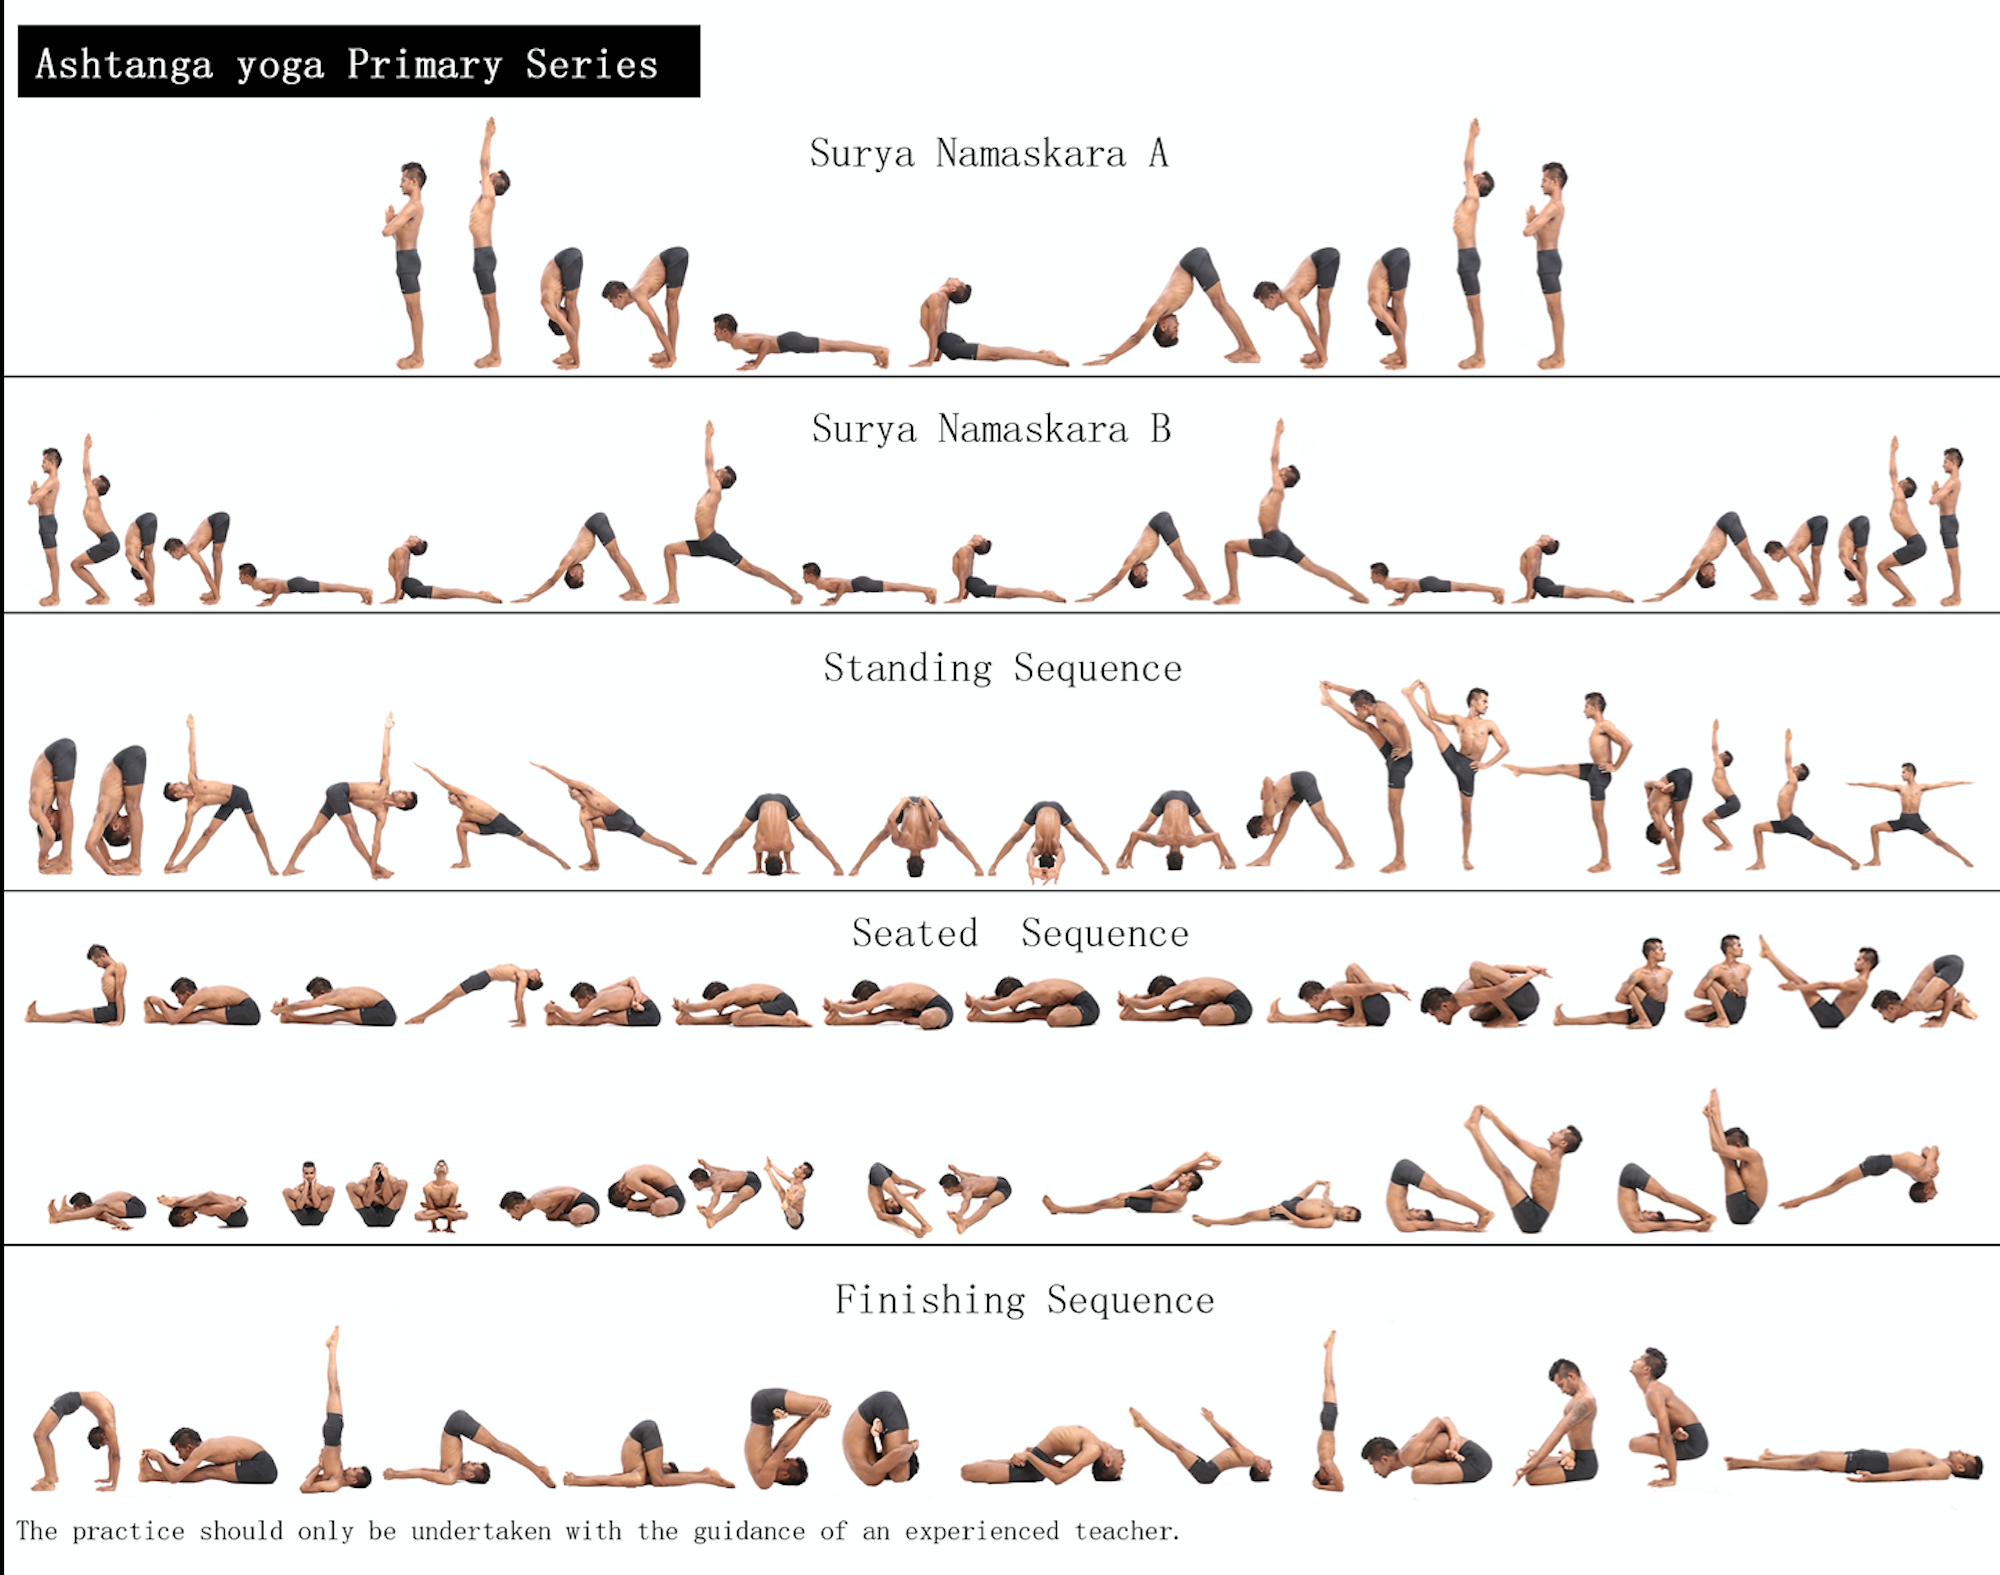 Дживамукти йога: основные принципы и преимущества